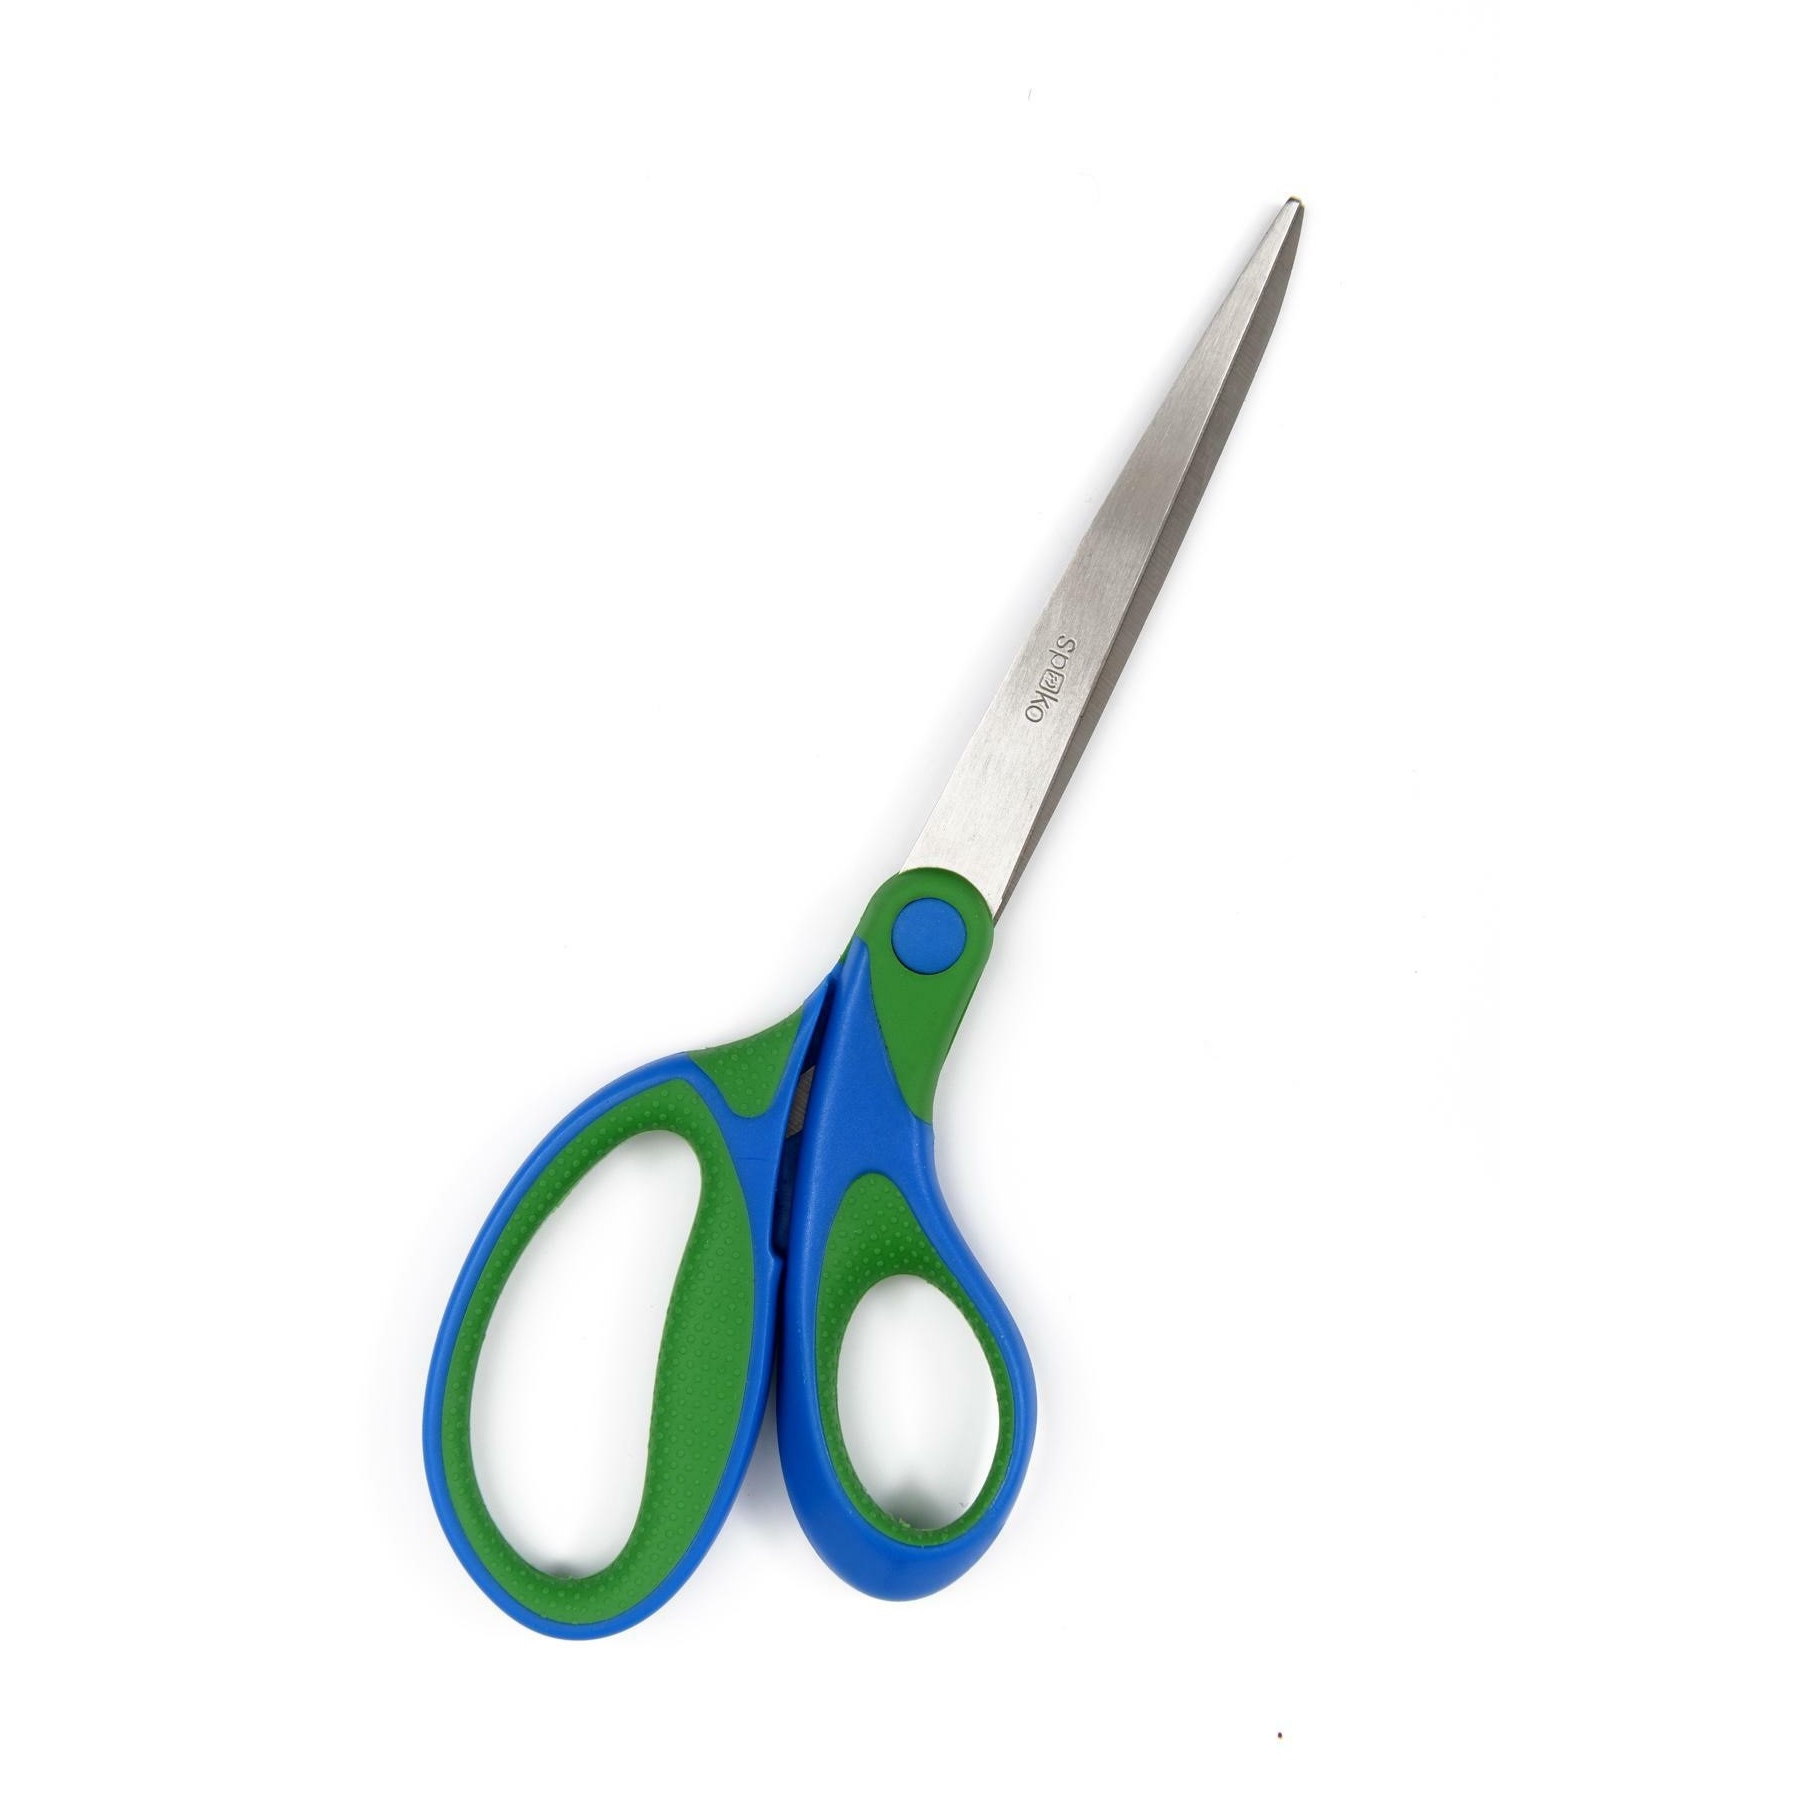 Nůžky kancelářské Spoko Comfort, 21 cm, asymetrické, zeleno-modré